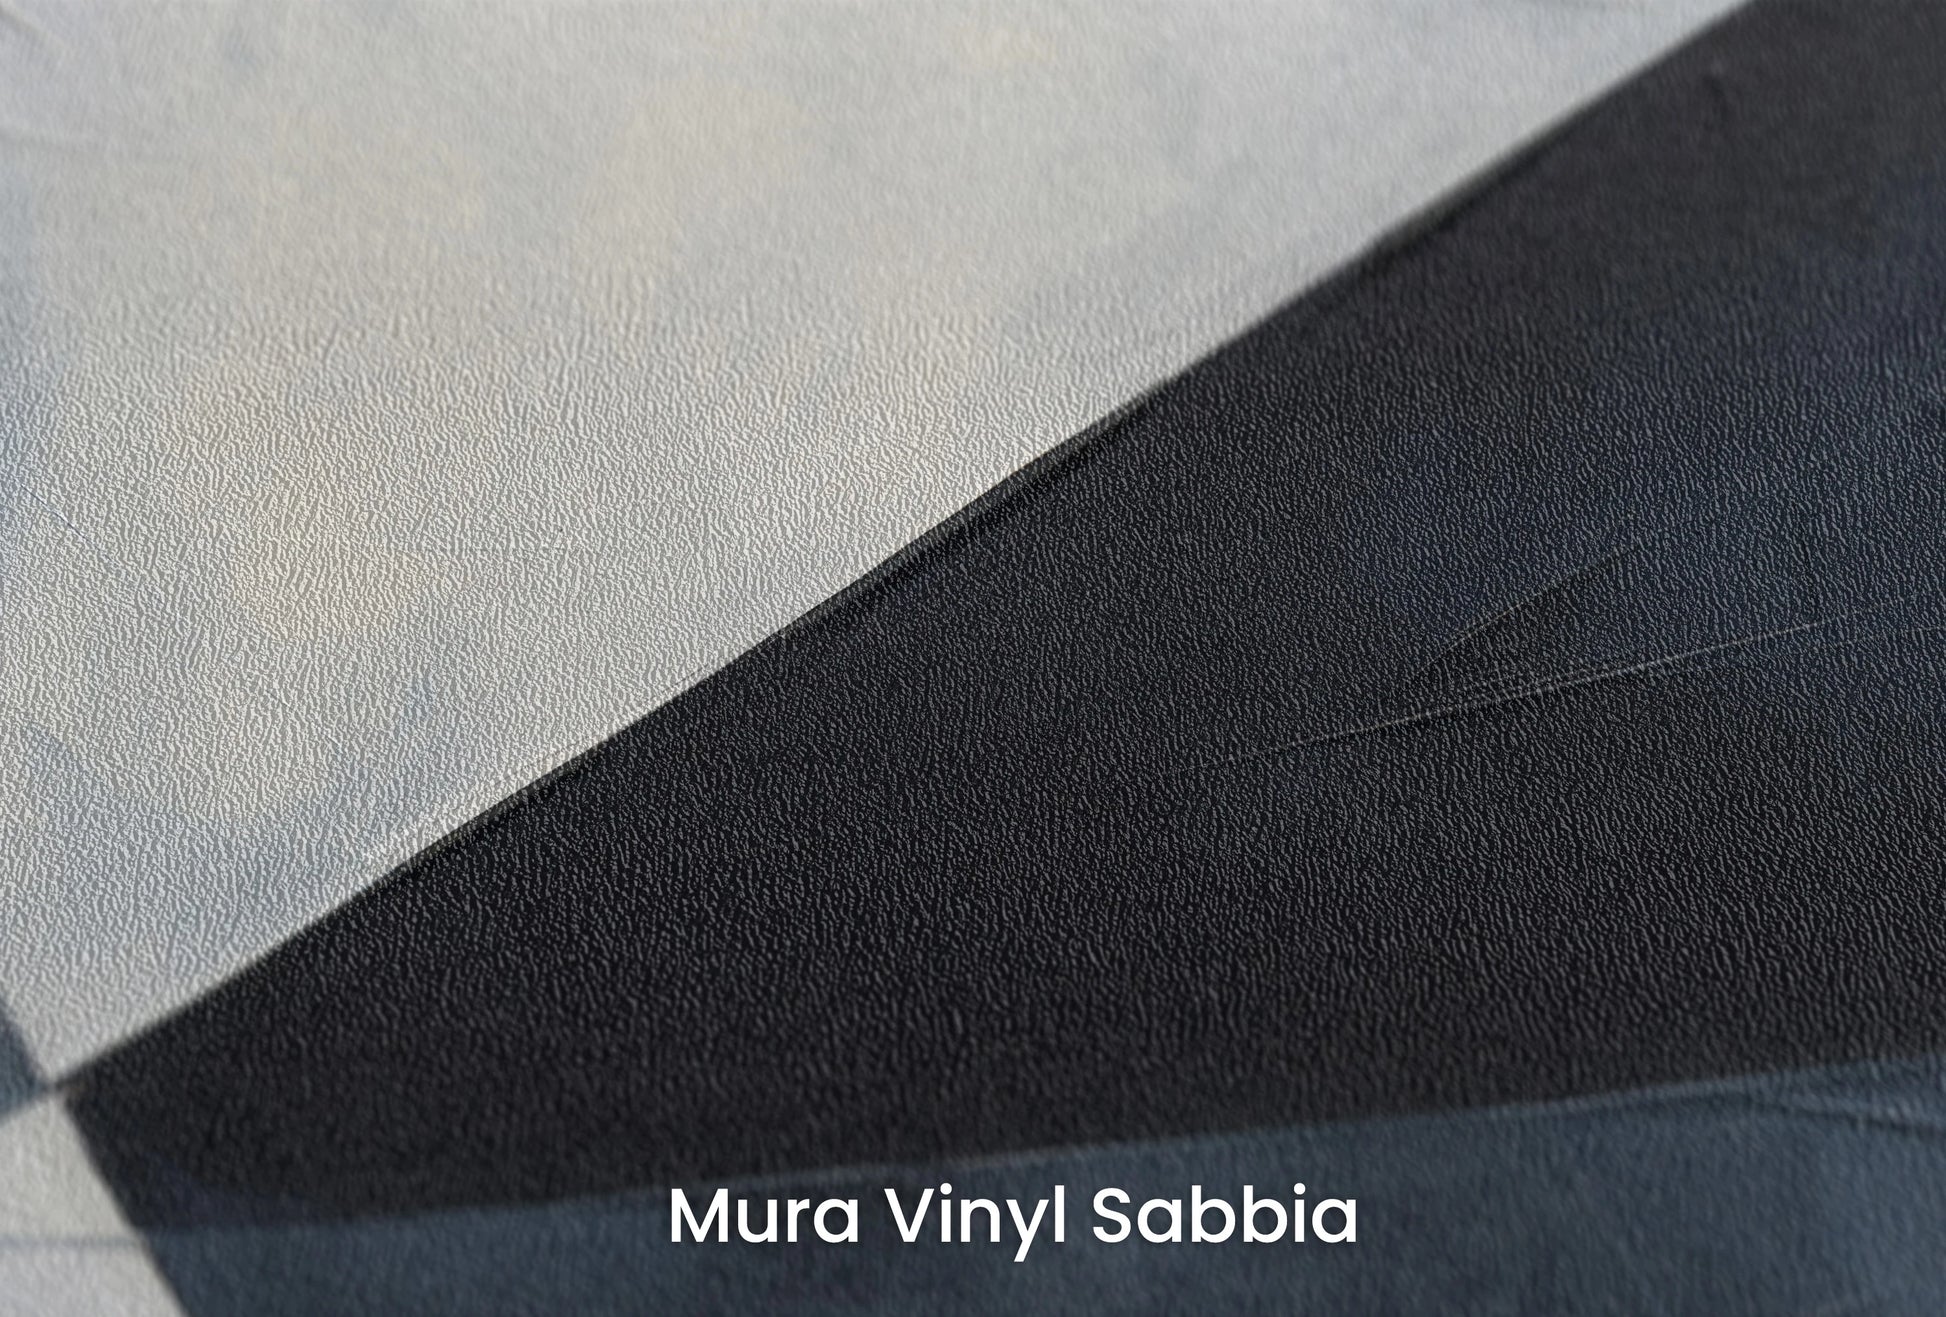 Zbliżenie na artystyczną fototapetę o nazwie Sharp Geometric Contrast na podłożu Mura Vinyl Sabbia struktura grubego ziarna piasku.